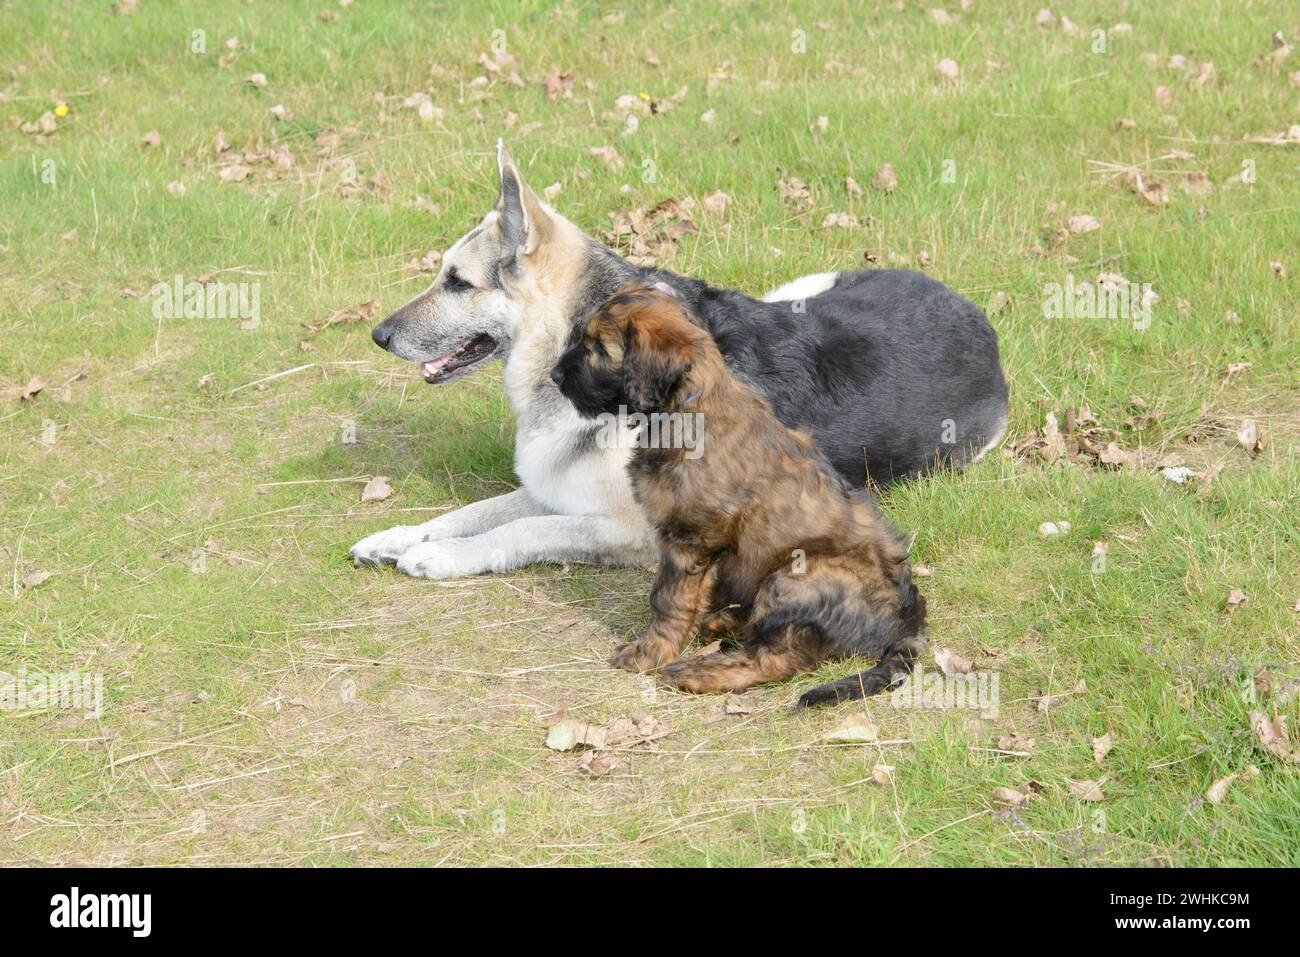 Ein Welpe und ein älterer Hund spielen zusammen auf einer Wiese, Briard (Berger de Brie), Welpe, 8 Wochen alt Stockfoto